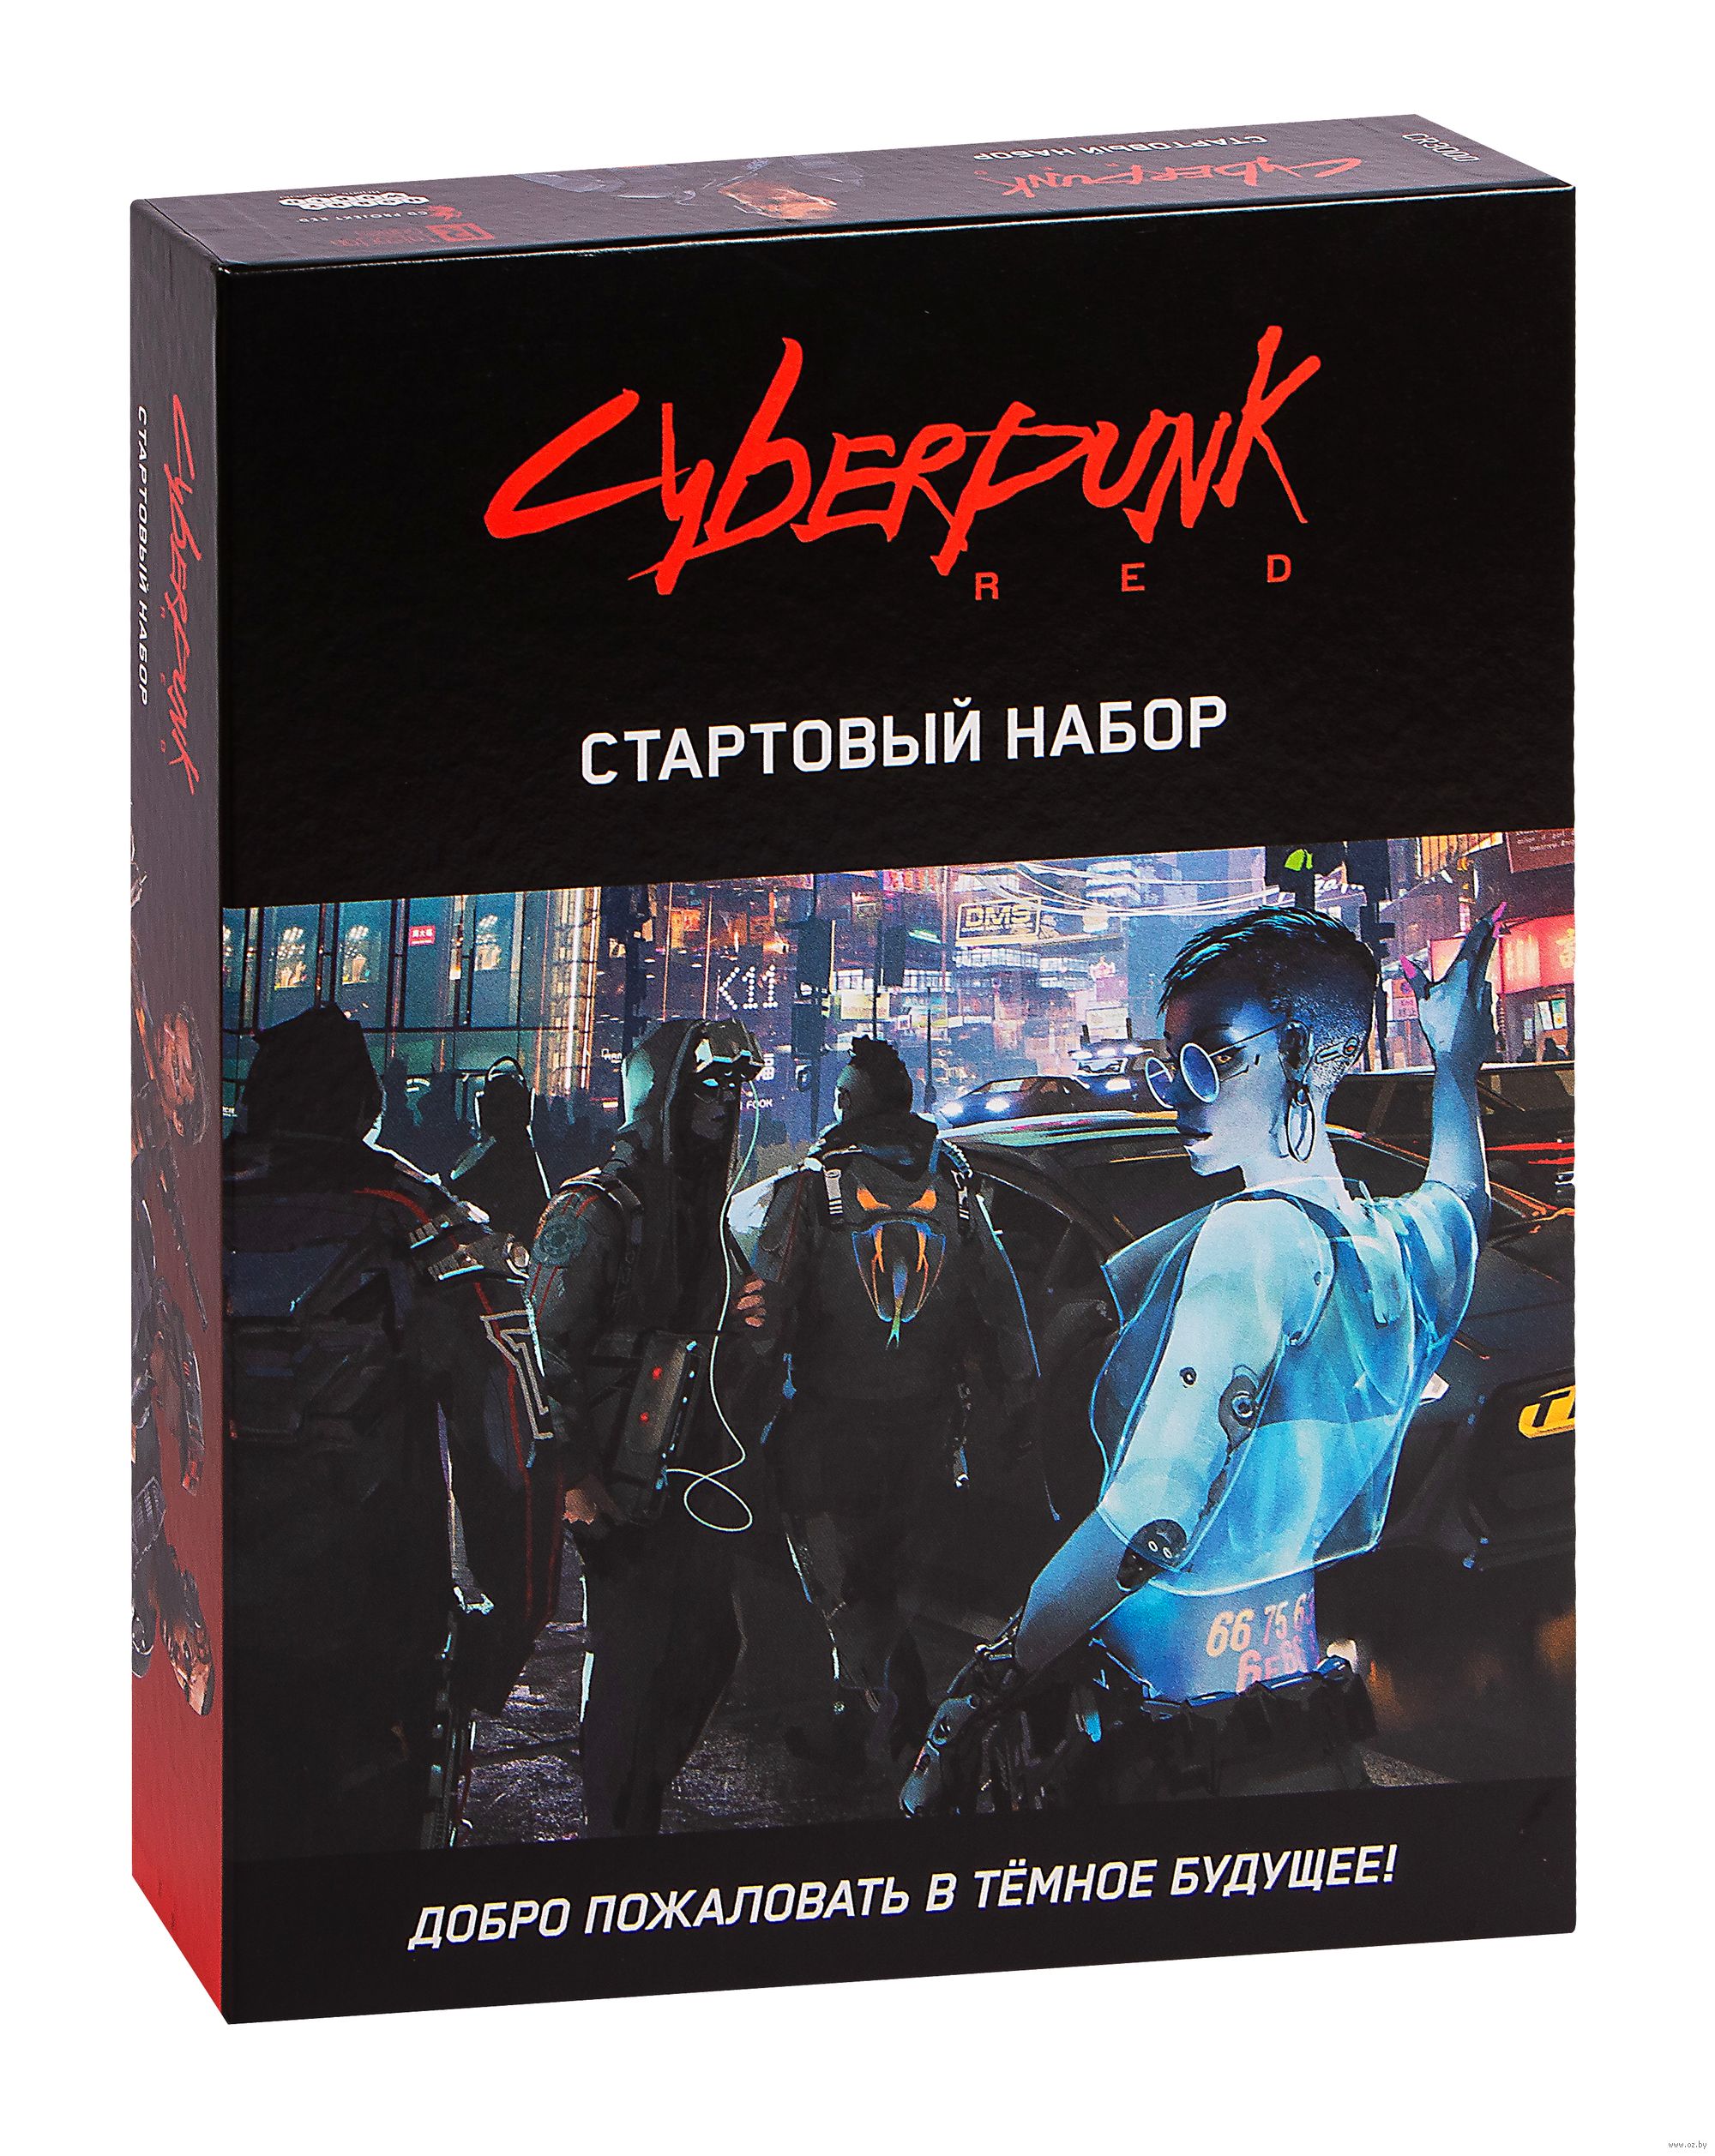 Cyberpunk red настольная игра купить на русском фото 69